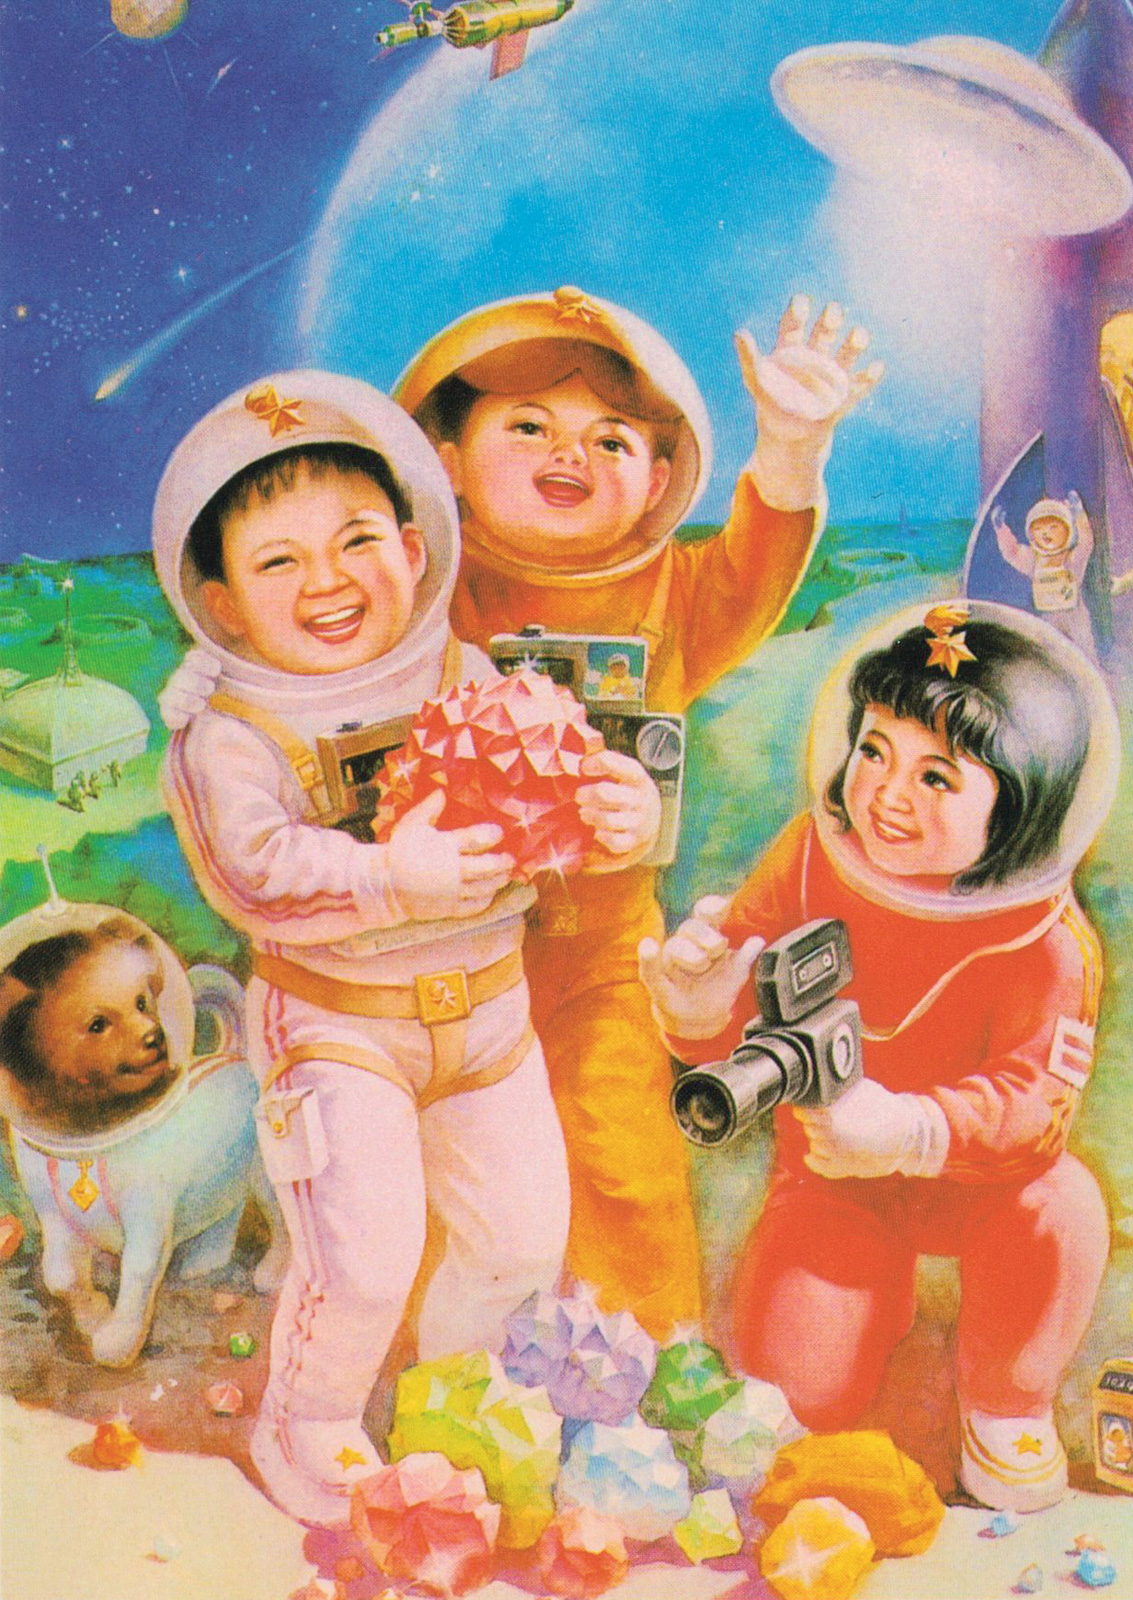 *Pequeños invitados en el palacio de la Luna*, póster chino de principio de los setenta, después de enviar los satélites DFH-1 y SJ-I al espacio, 1969